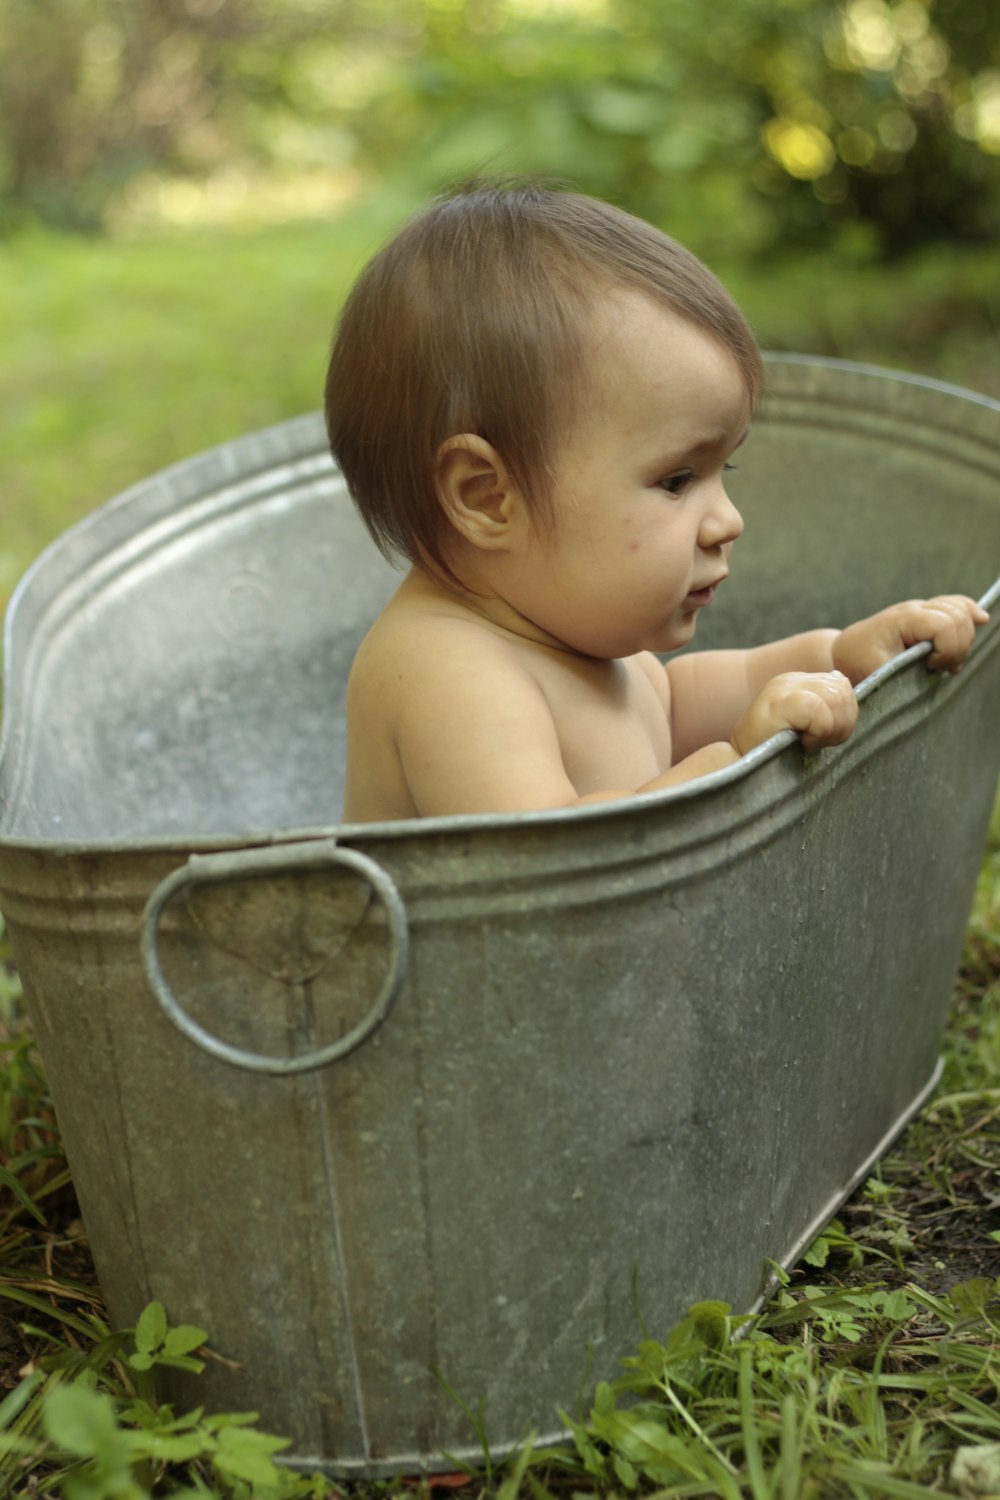 topless baby in grey plastic bucket